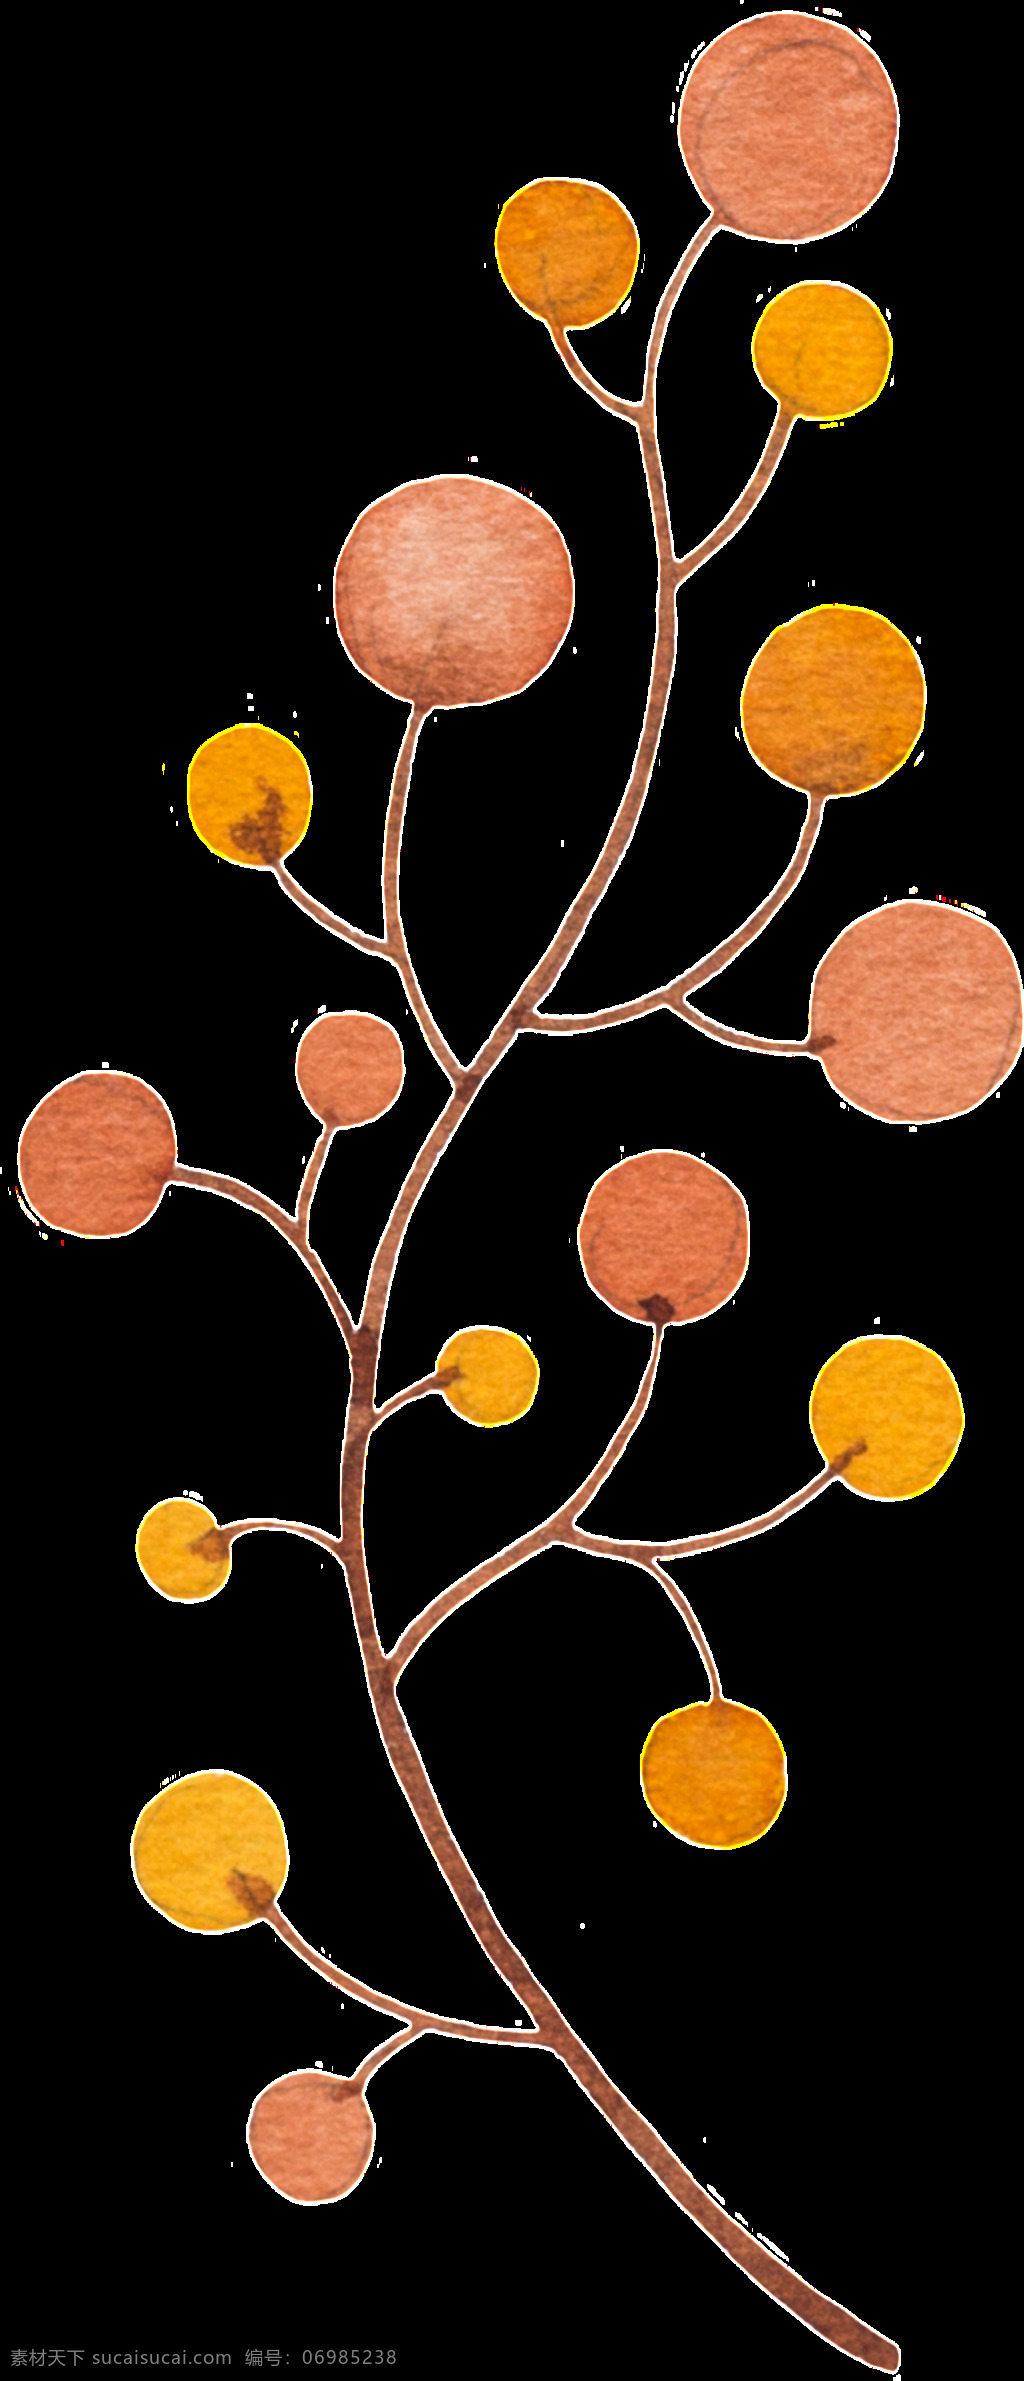 枝 小圆 叶片 树枝 矢量 橙色 黄色 平面素材 设计素材 矢量素材 树叶 枝桠